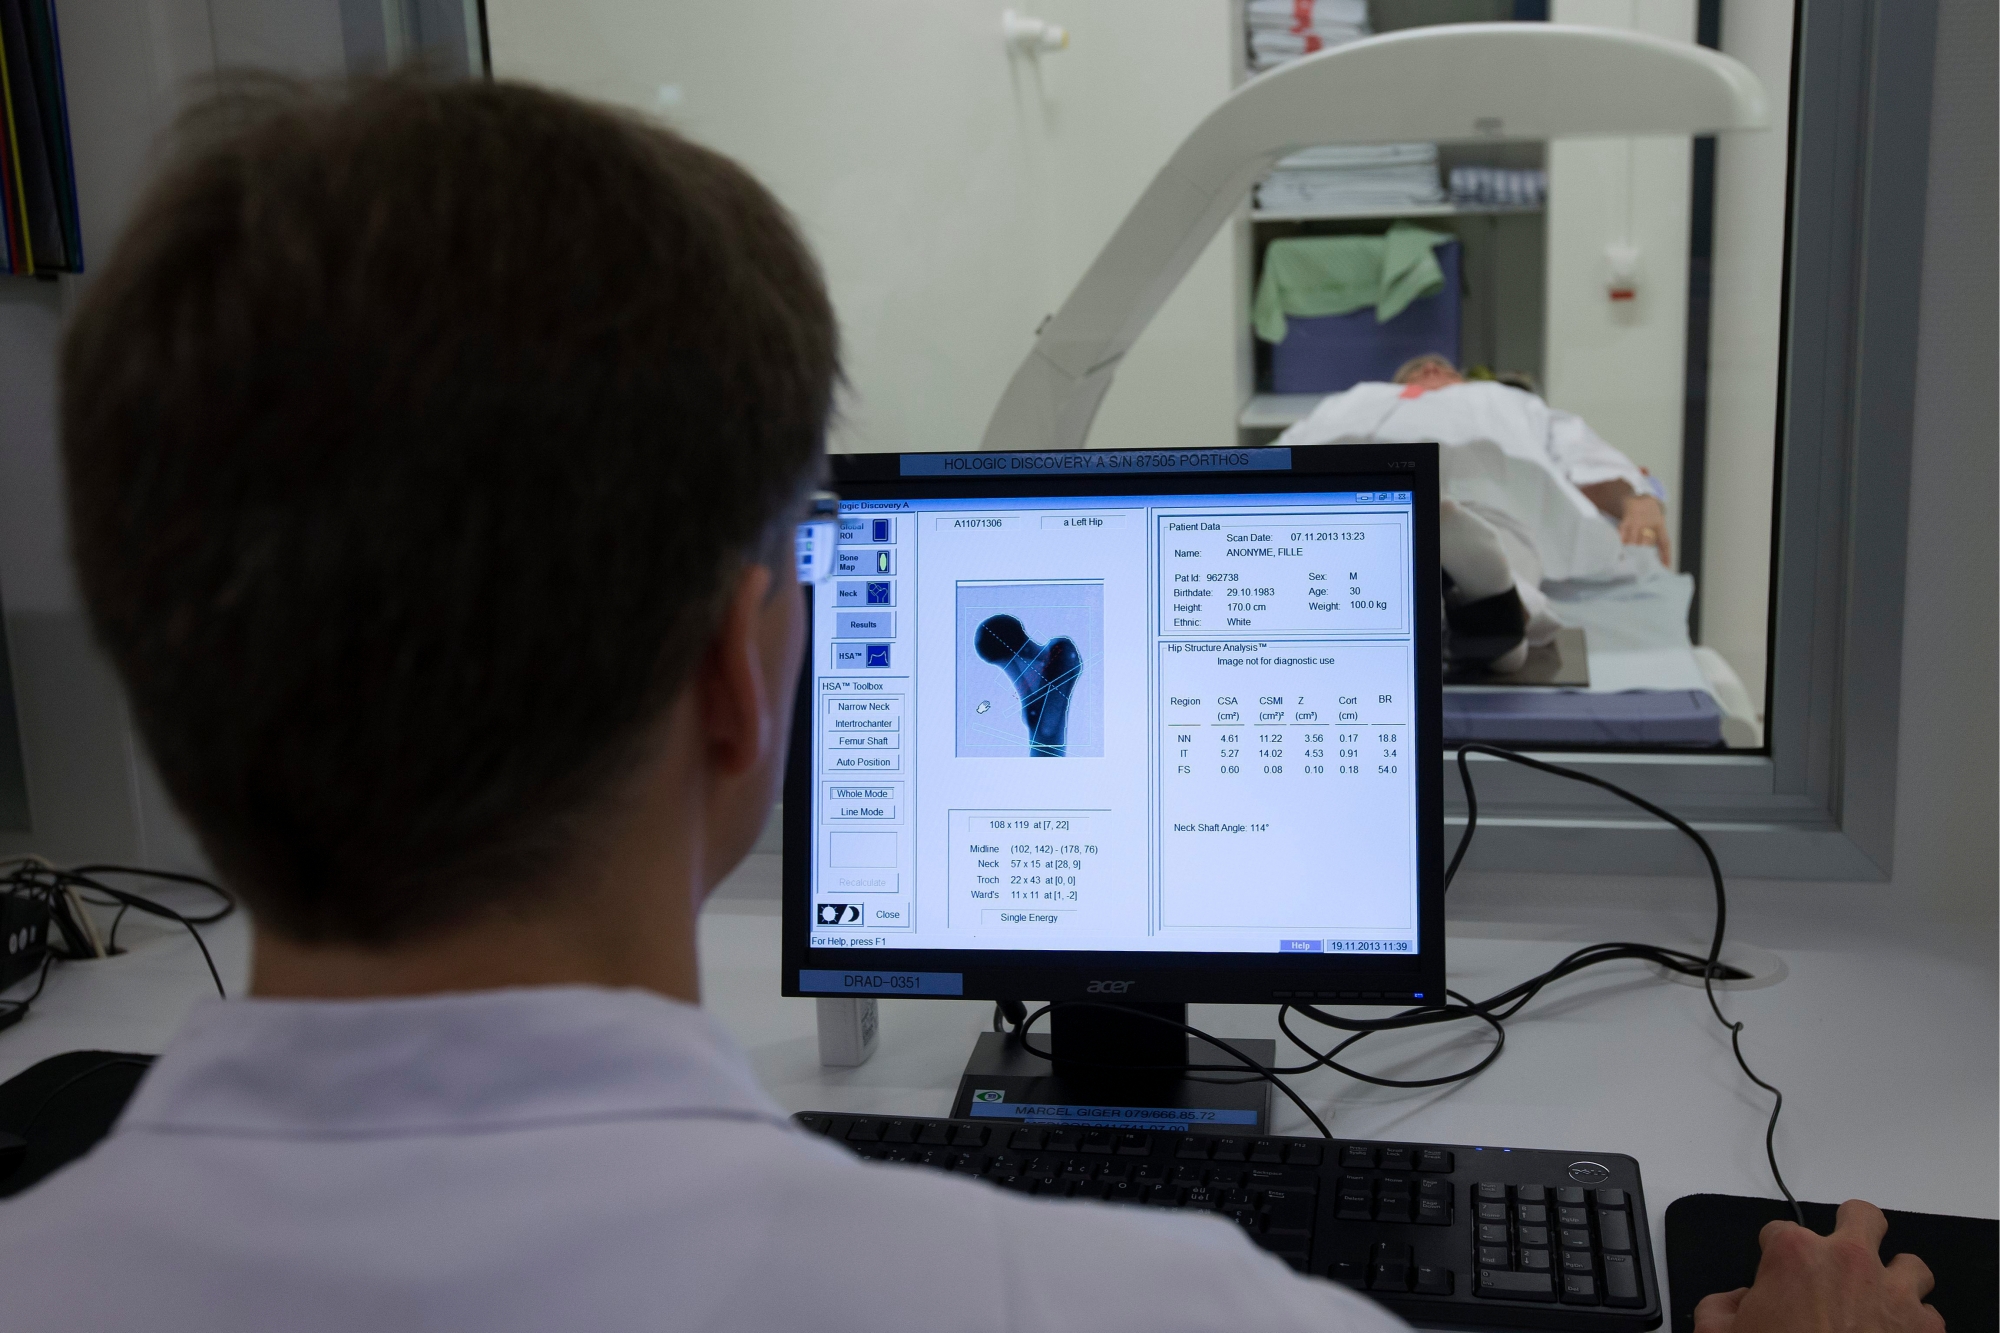 Un technicien en radiologie medicale des HUG fait une demostration du scanner peripherique a tres haute resolution installe dans laboratoire de mesure de la densite minerale osseuse des HUG (Hopitaux Universitaires de Geneve), lors d'une visite du laboratoire, ce mardi 19 novembre 2013 a Geneve. Les Hopitaux universitaires de Geneve, HUG, ont decide d'ameliorer leur dispositif de diagnostic de l'osteoporose en installant deux nouveaux osteodensitometres, scanner peripherique a tres haute resolution. (KEYSTONE/Salvatore Di Nolfi) SCHWEIZ SPITAL GENF LABOR MINERALOMETRIE